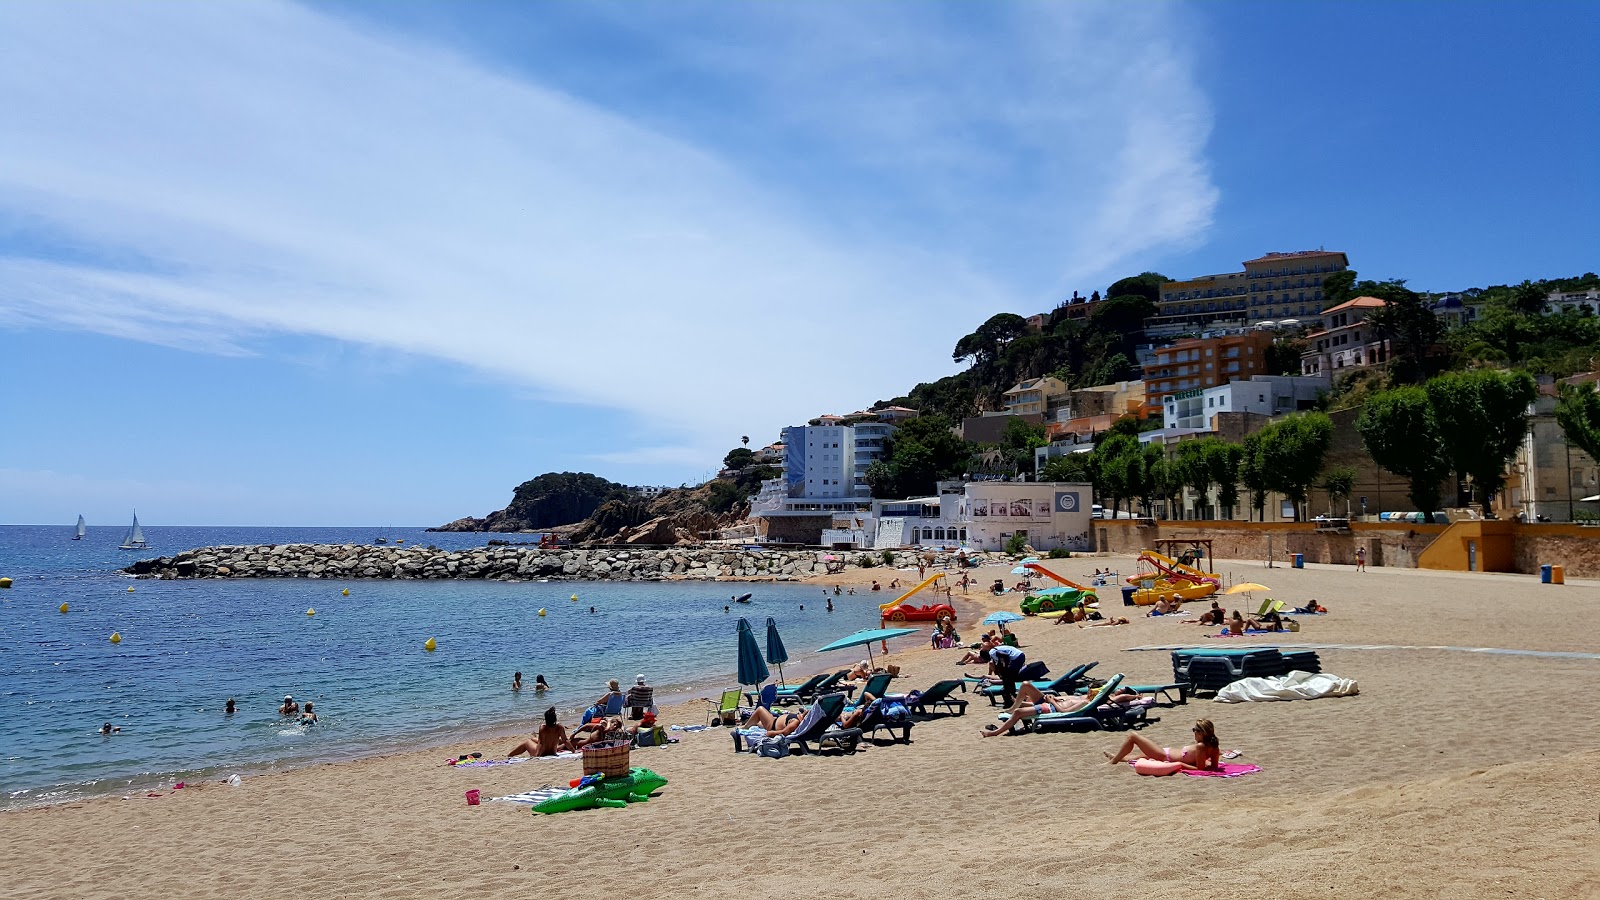 Valokuva Playa de Sant Feliuista. pinnalla turkoosi puhdas vesi:n kanssa